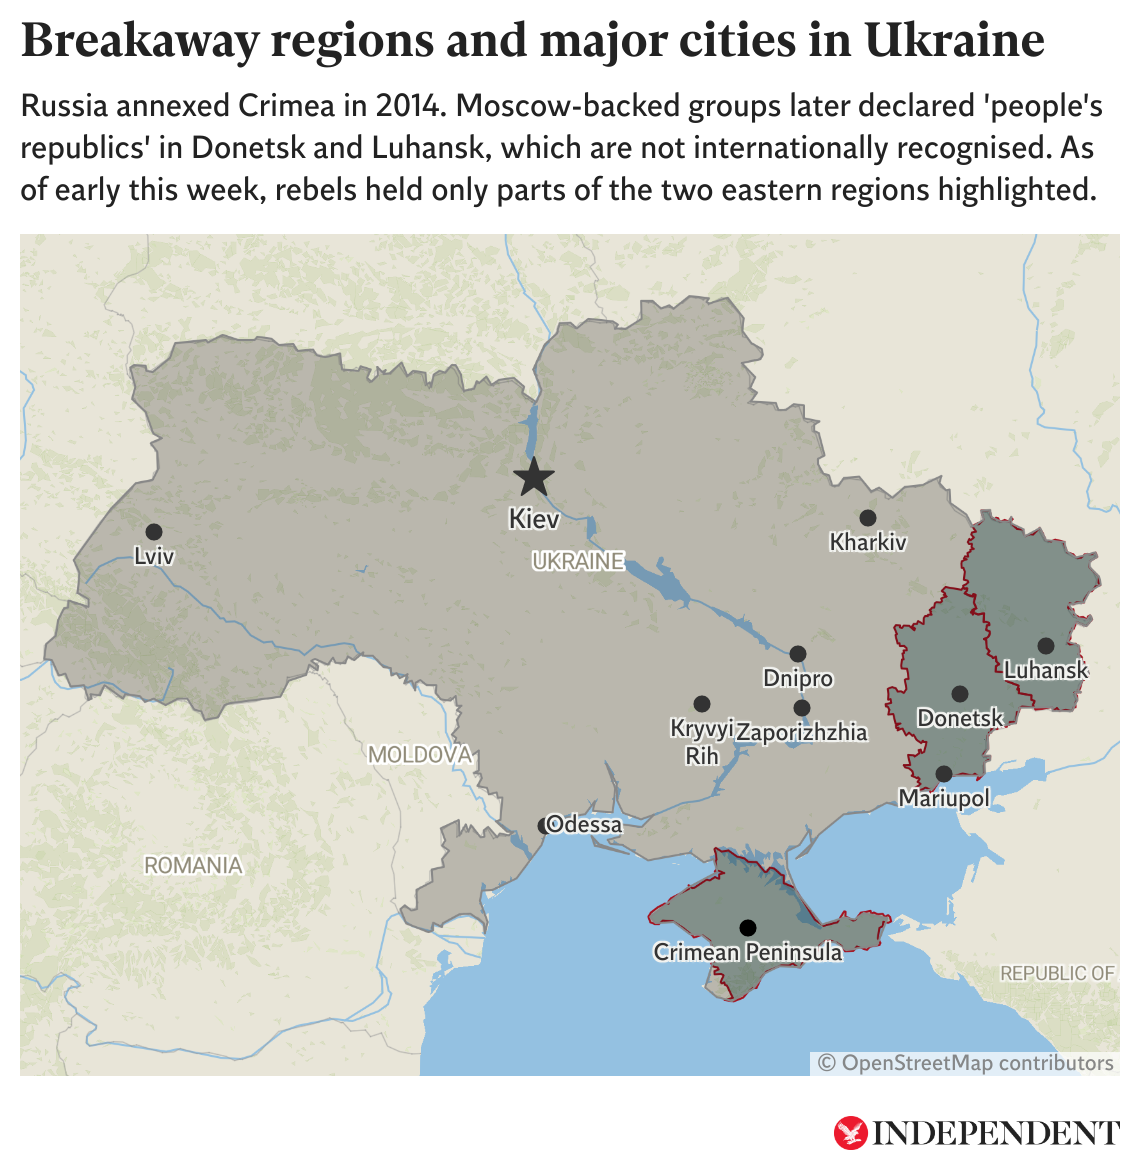 Este mapa muestra a las grandes ciudades de Ucrania, así como las regiones separatistas apoyadas por Moscú. A principio de esta semana, los rebeldes solo ocupaban algunas partes de las regiones de Donetsk y Luhansk marcadas